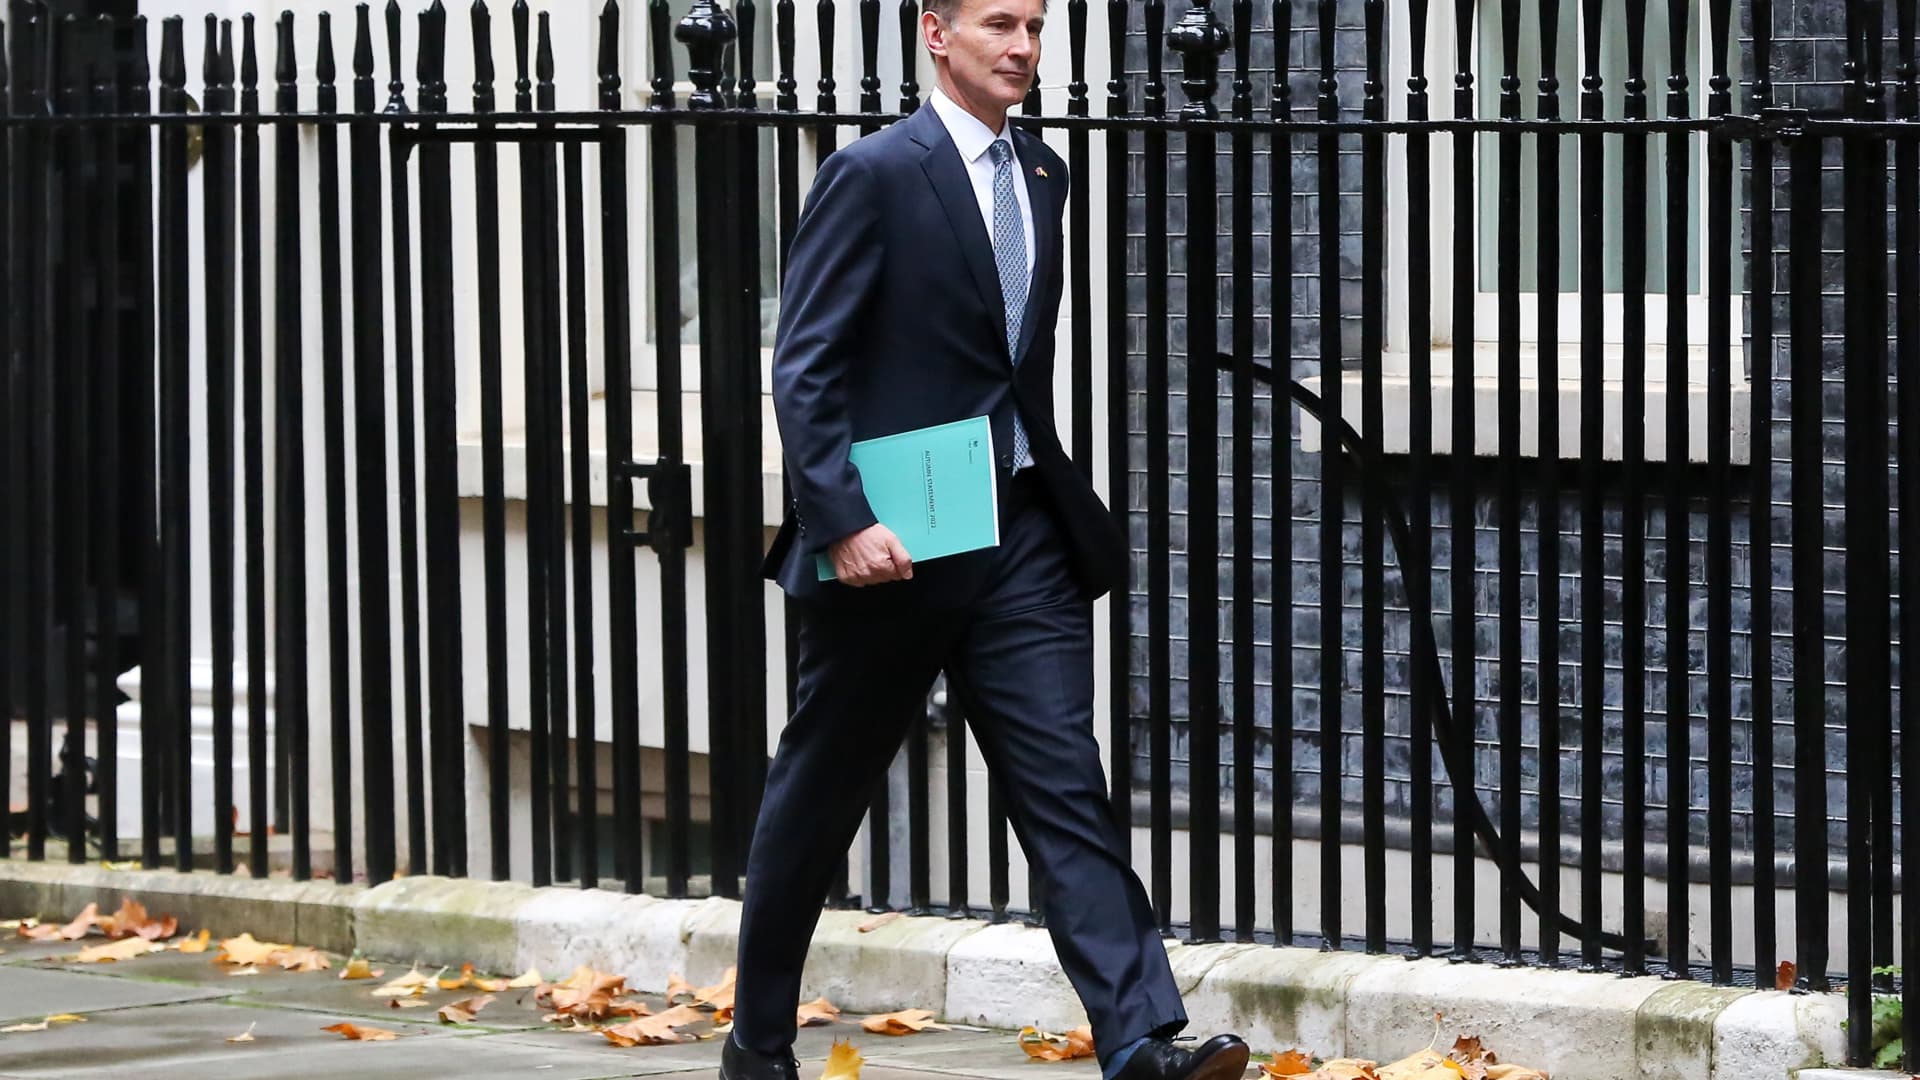 وزير الخزانة البريطاني يعلن عن زيادات ضريبية وخفض الإنفاق ، كما يقول البلد في حالة ركود